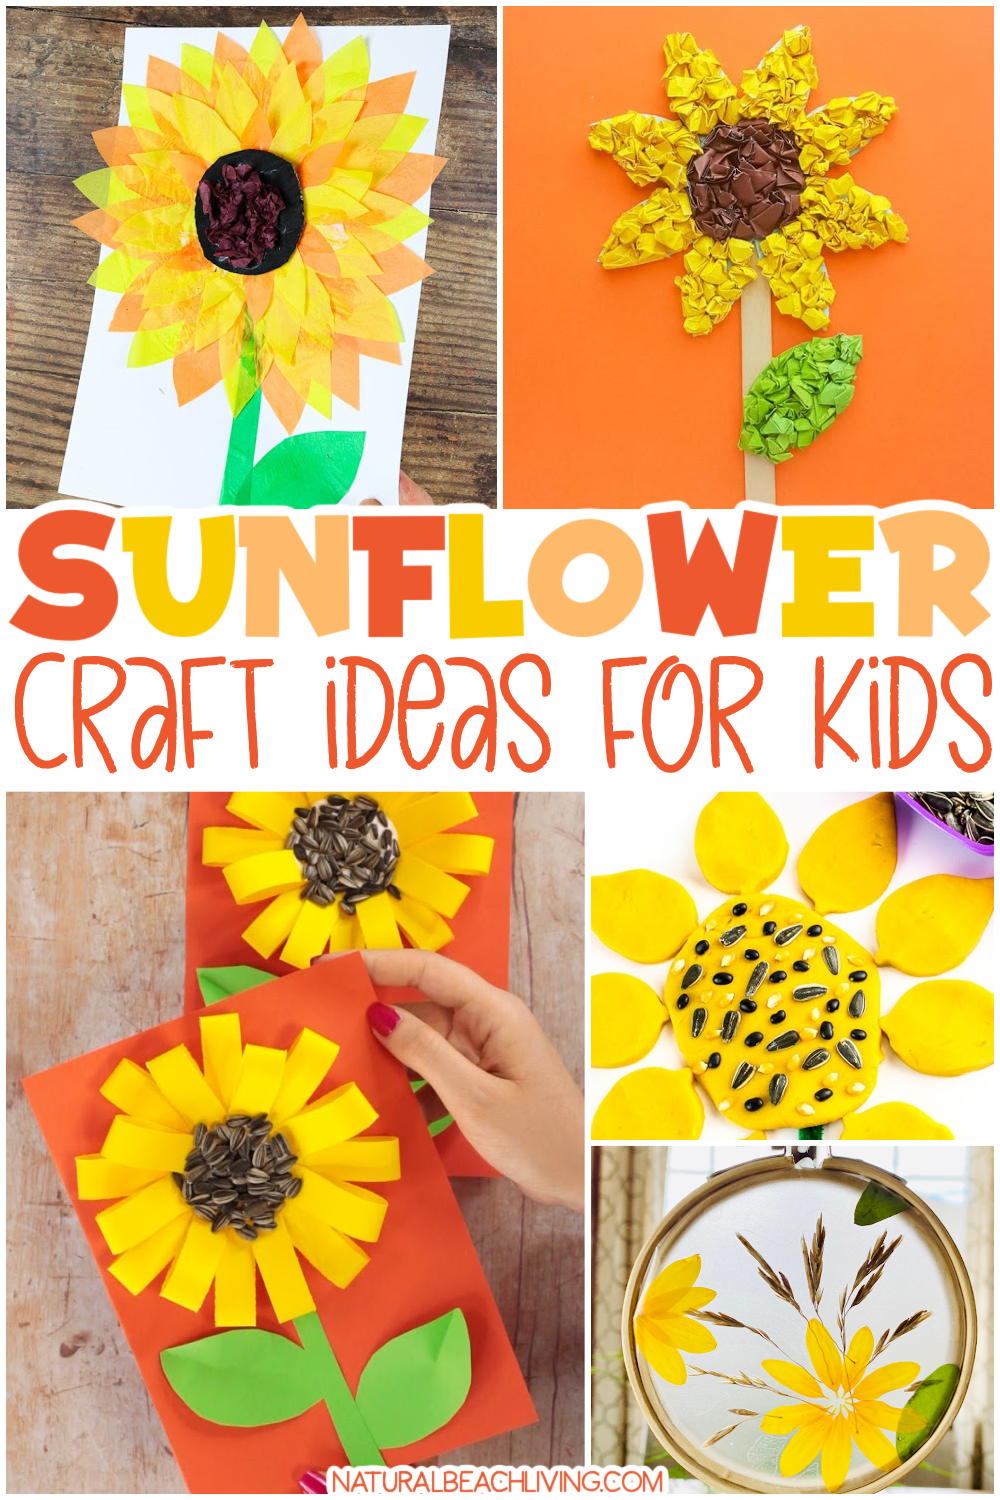 Easy Tissue Paper Sunflower Craft - Arty Crafty Kids